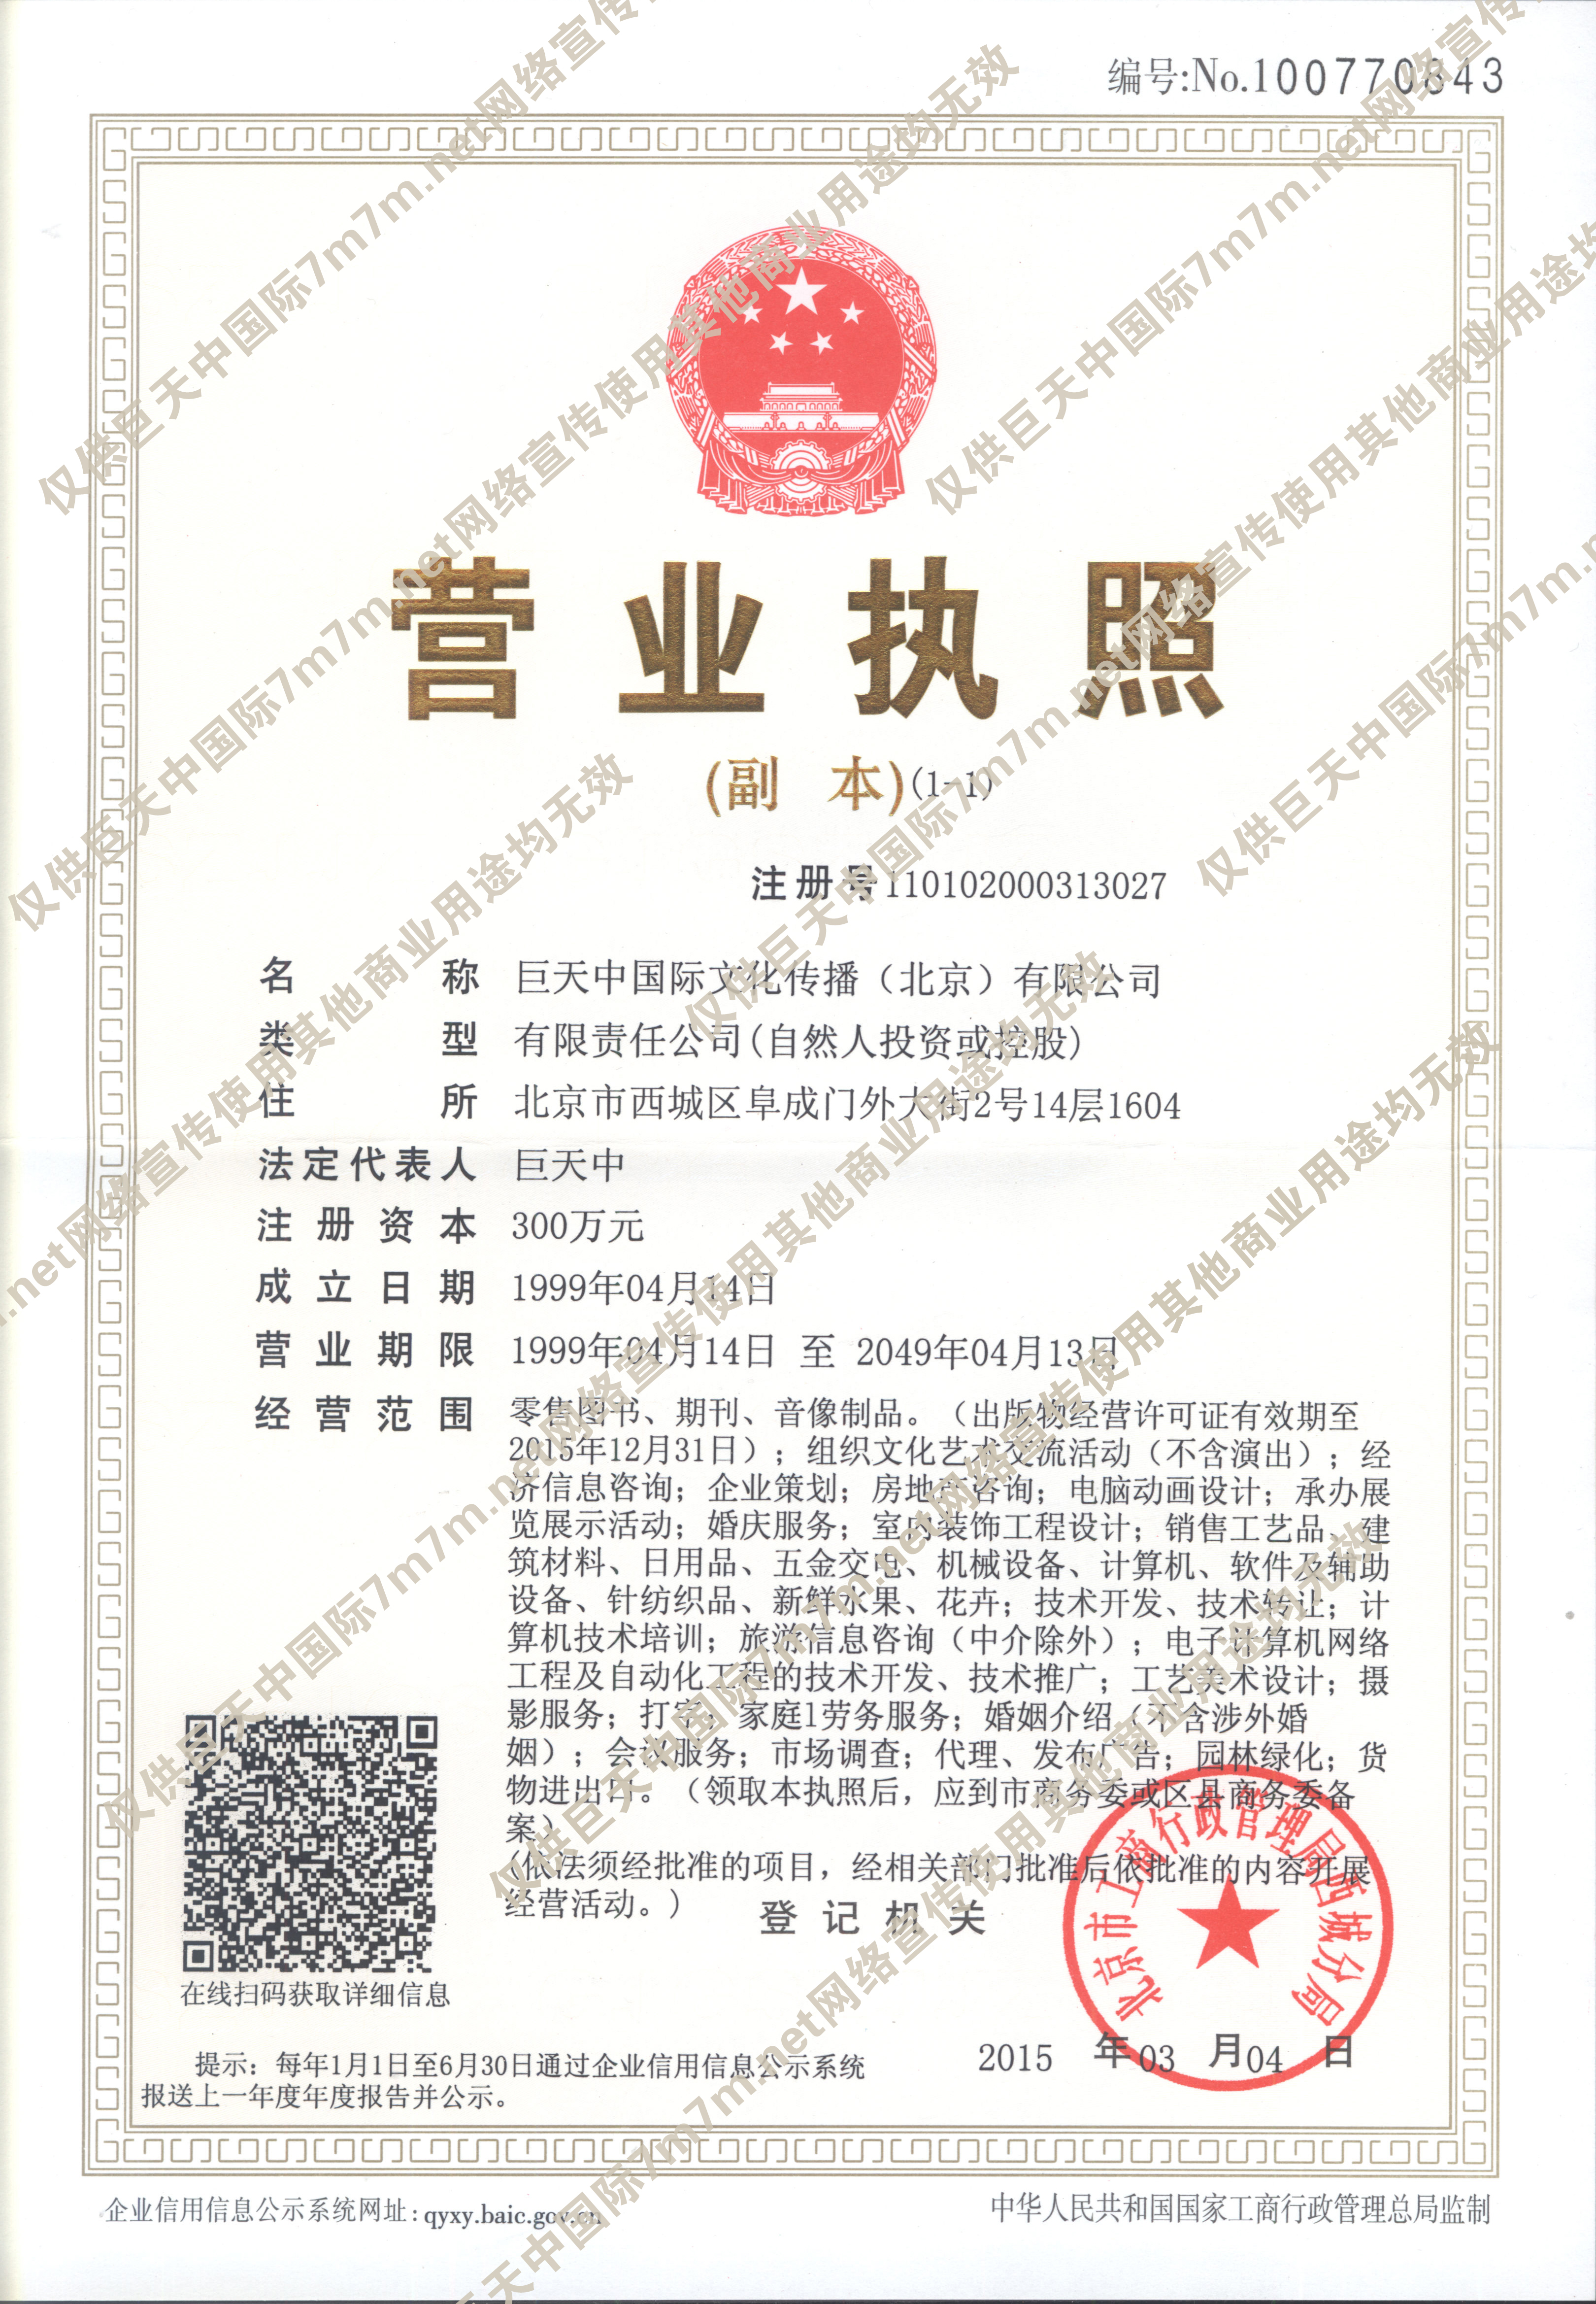 巨天中国际文化传播(北京)有限公司-企业法人营业执照